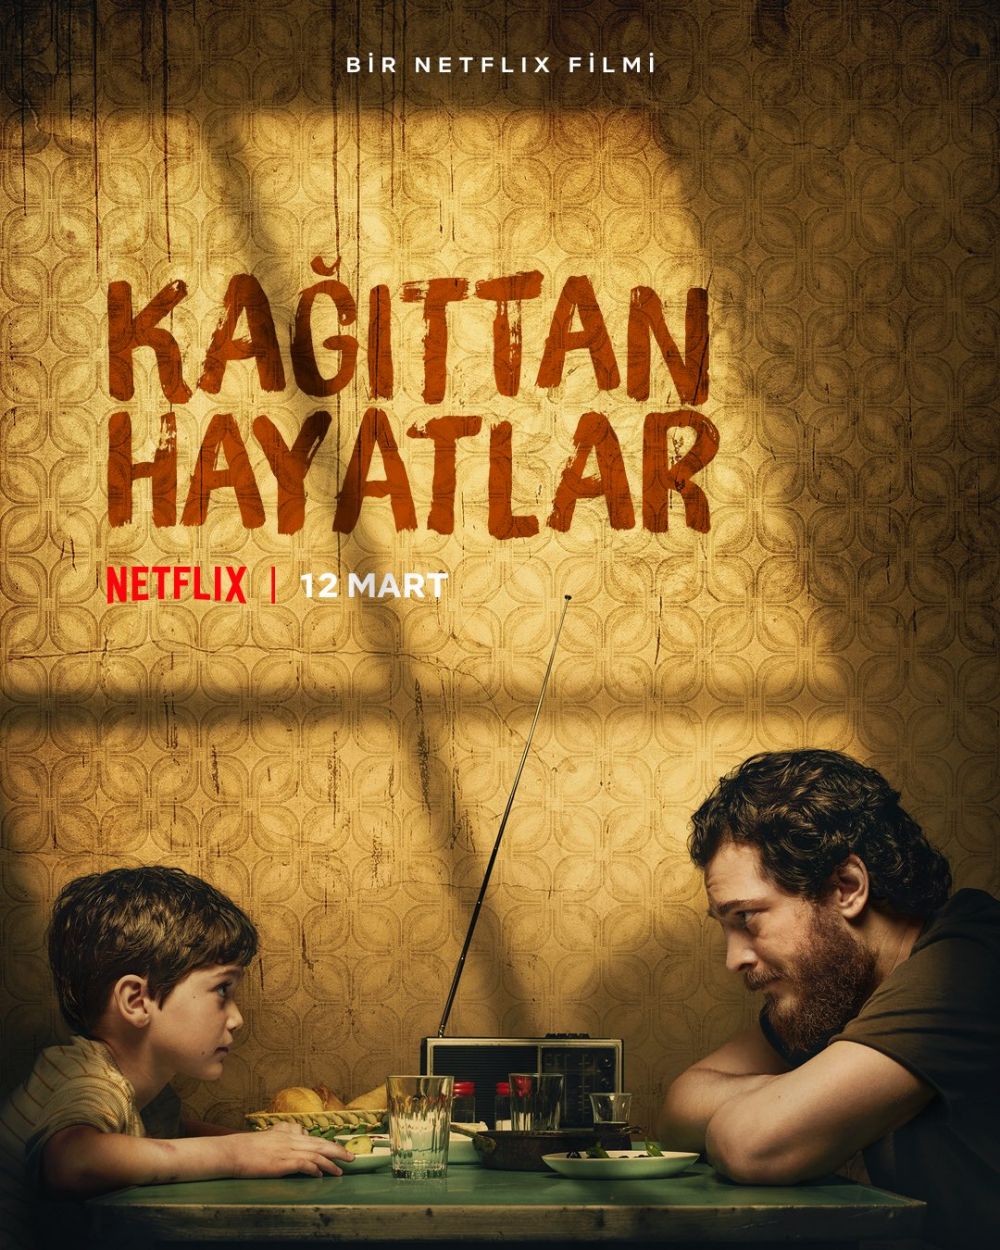 11 Rekomendasi film Netflix kisah perjuangan ayah, banyak cerita haru